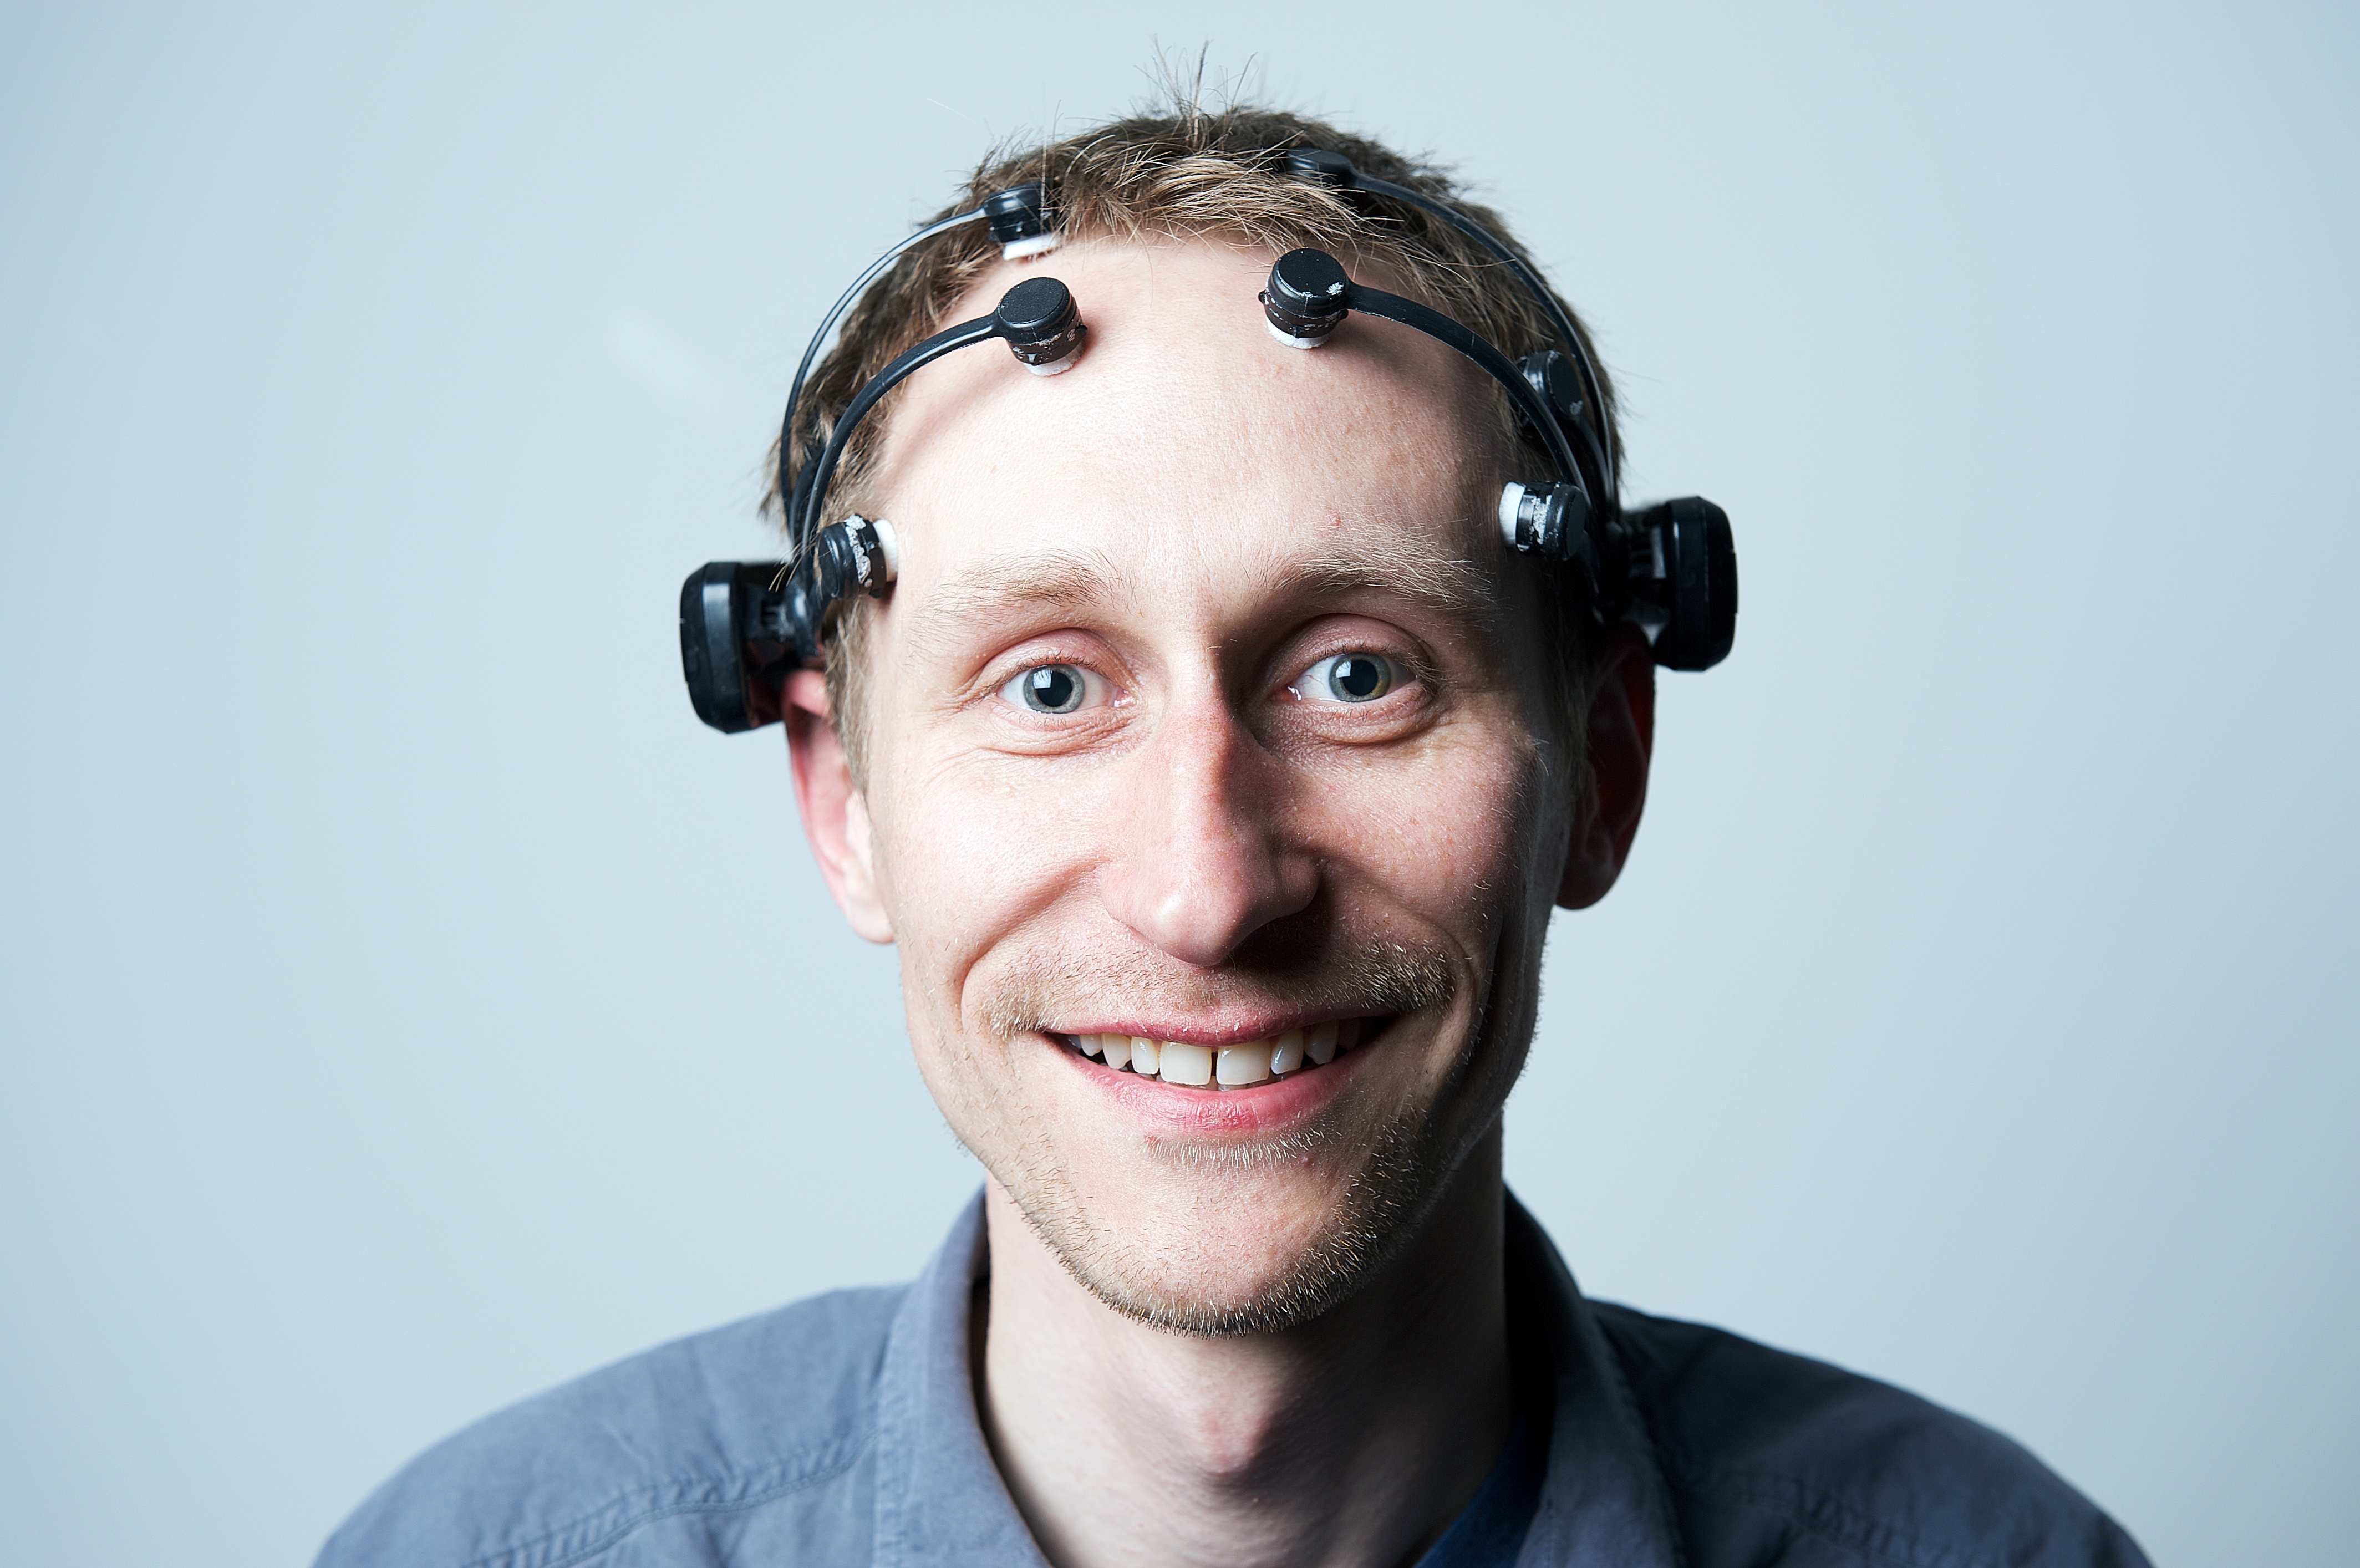 IBM's Kevin Brown wearing the Emotiv headset